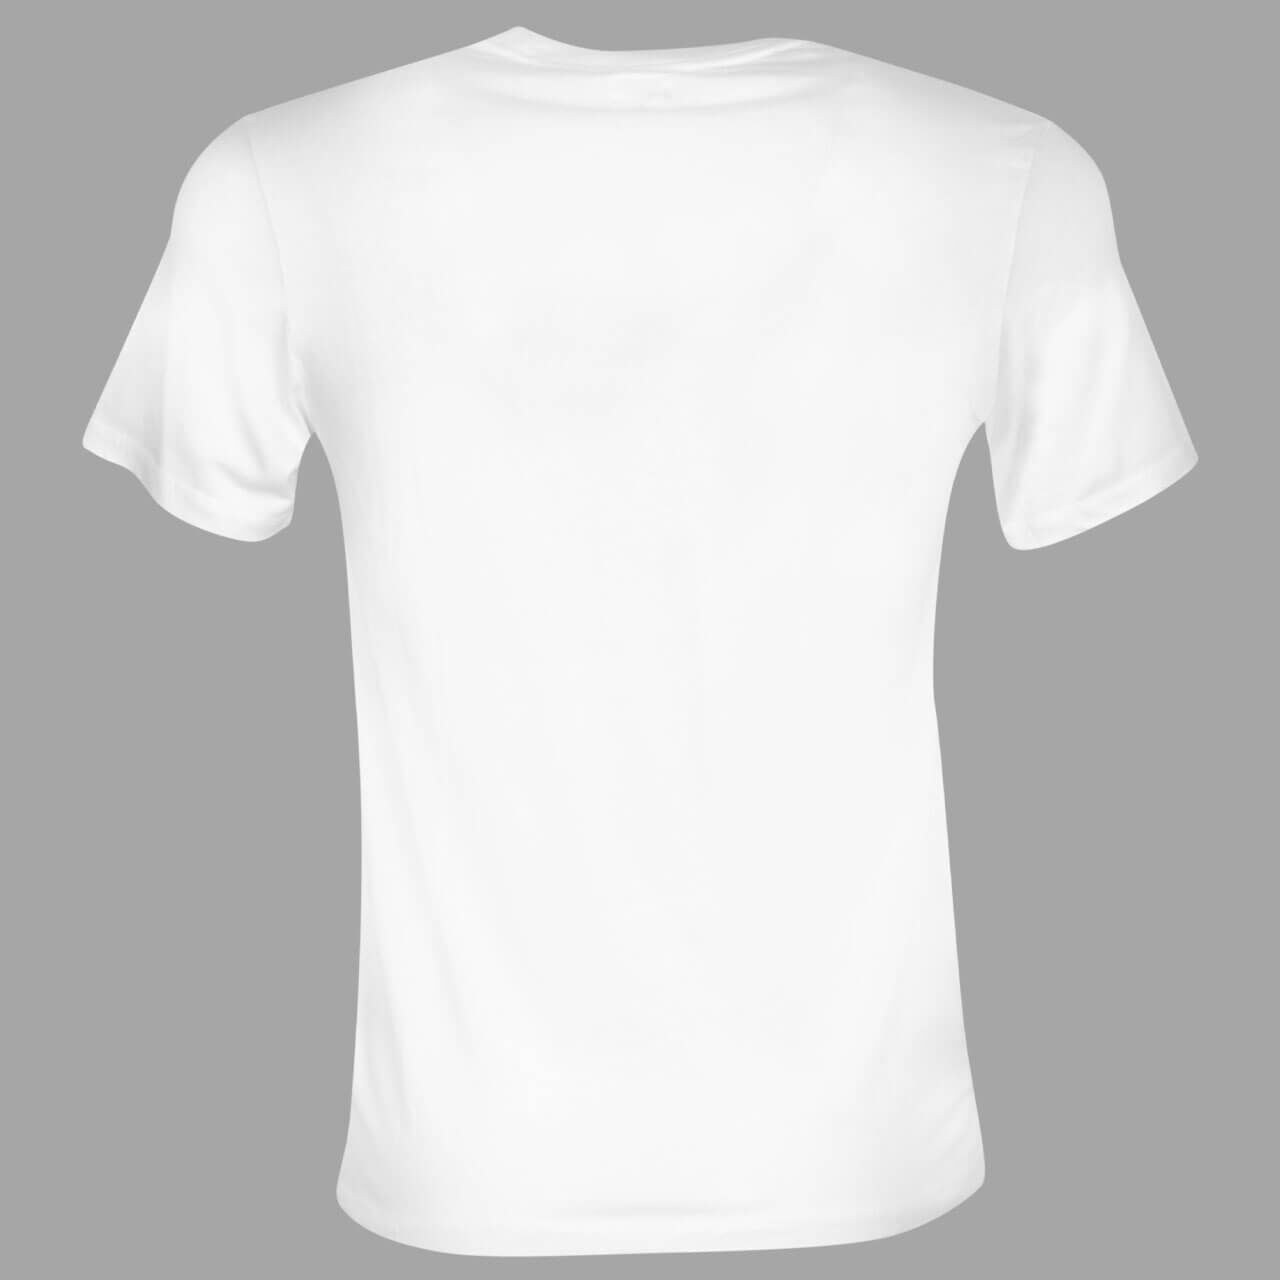 Levis Herren T-Shirt in Weiß, FarbNr. 0000